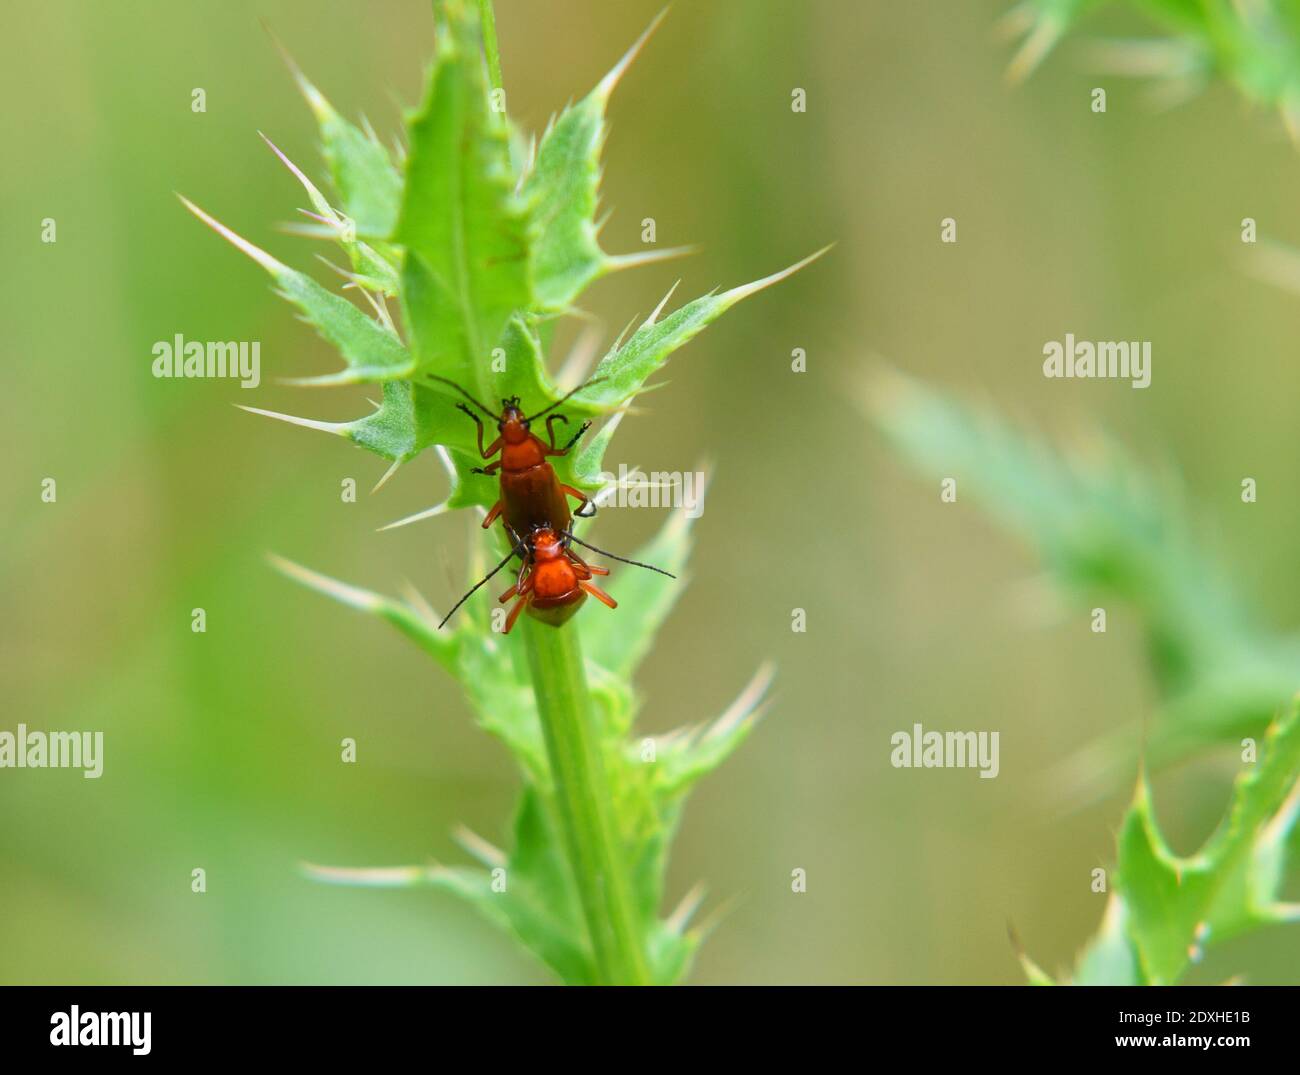 Escarabajos cardinales de cabeza roja que se aparean en la planta Foto de stock